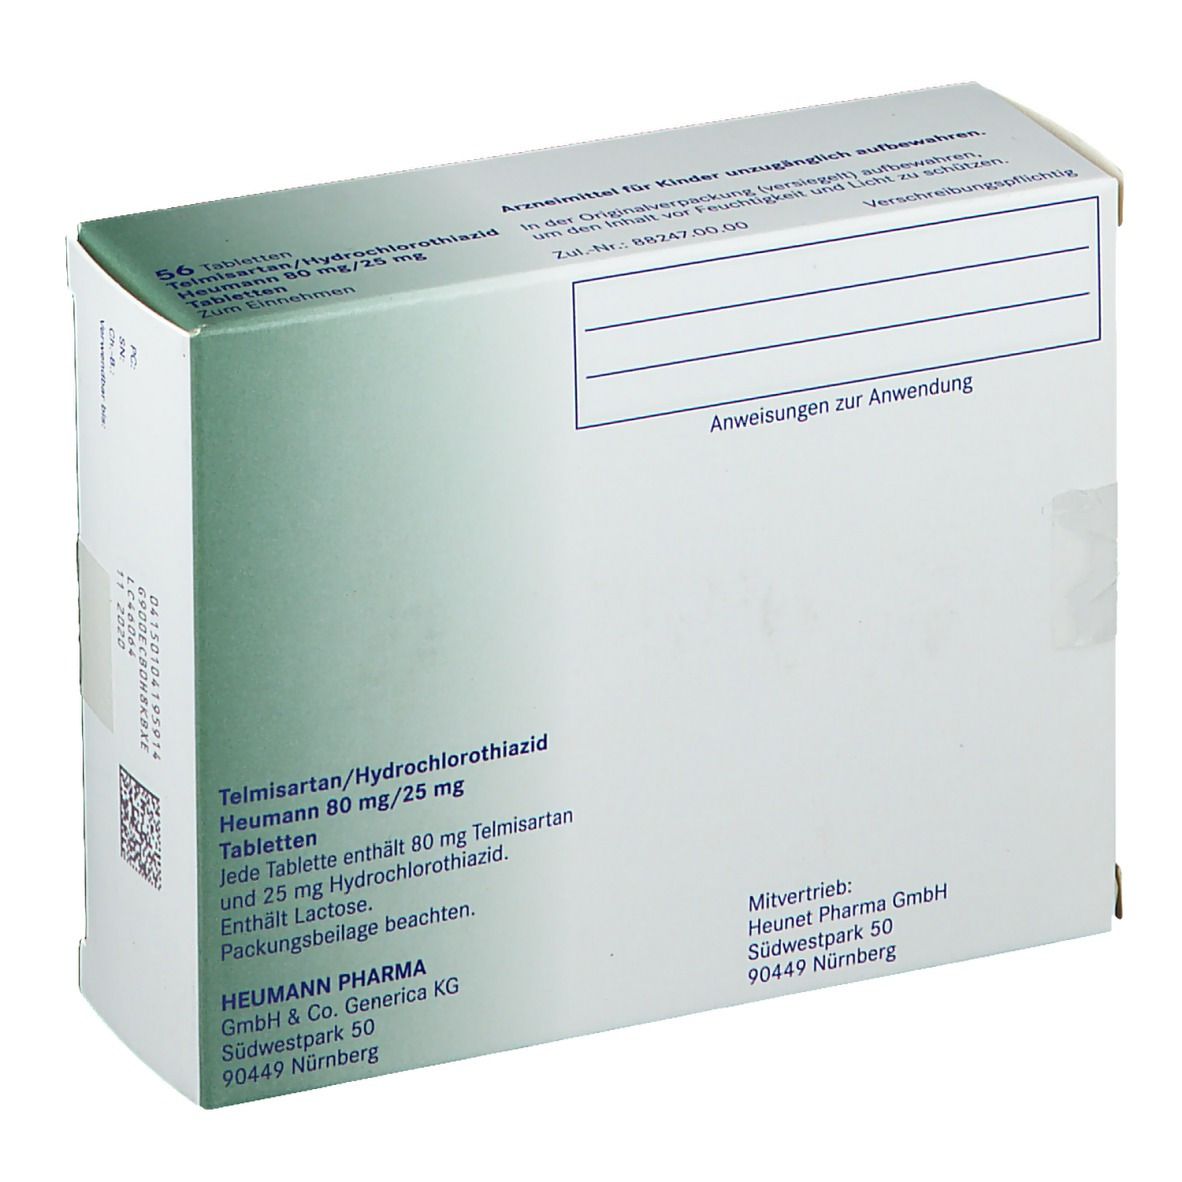 Telmisartan/Hydrochlorothiazid Heumann 80 mg/25 mg